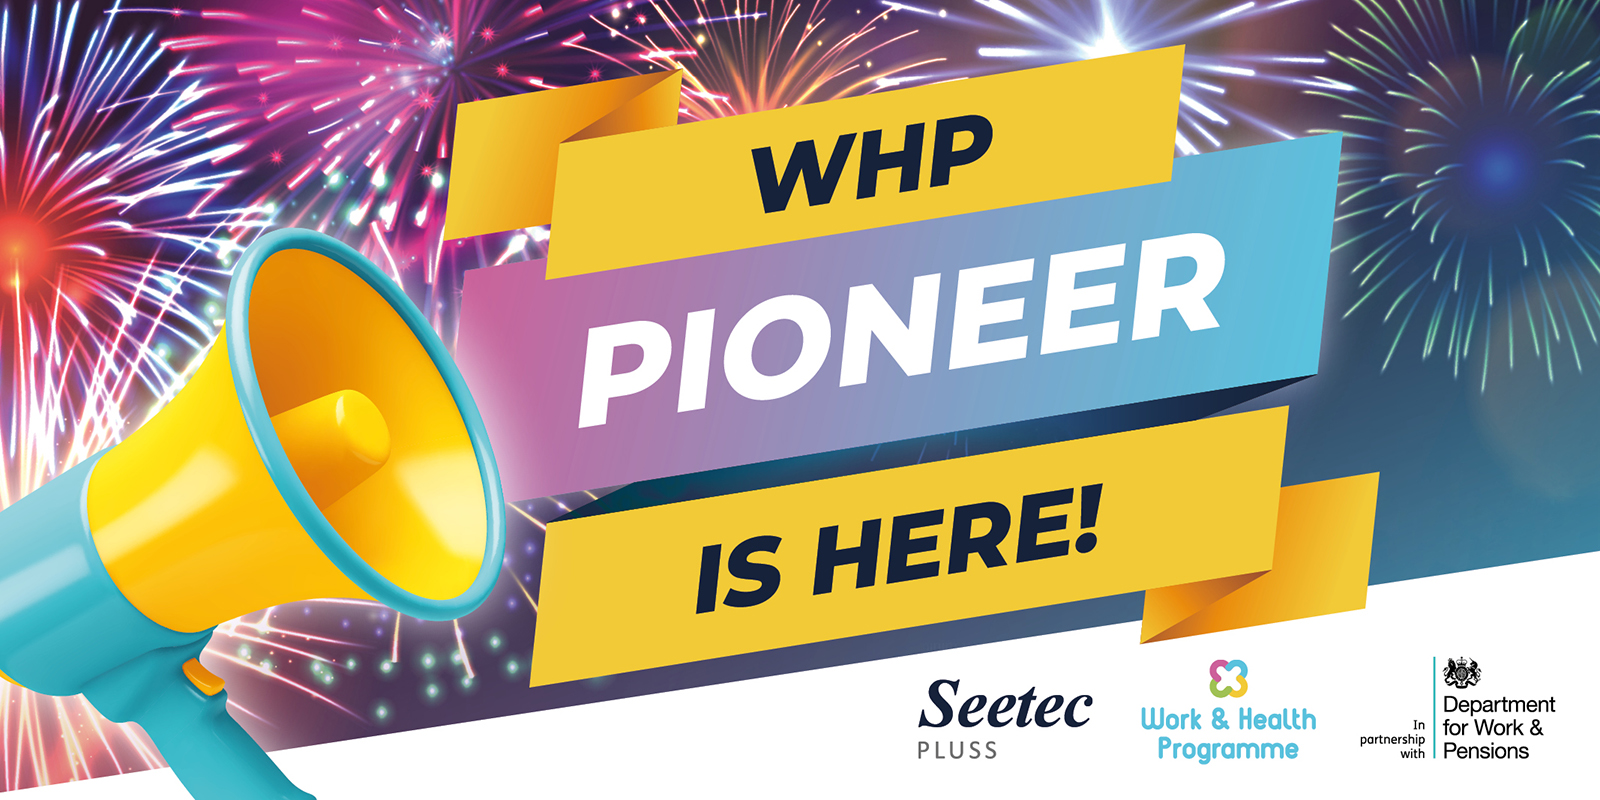 WHP Pioneer is here!